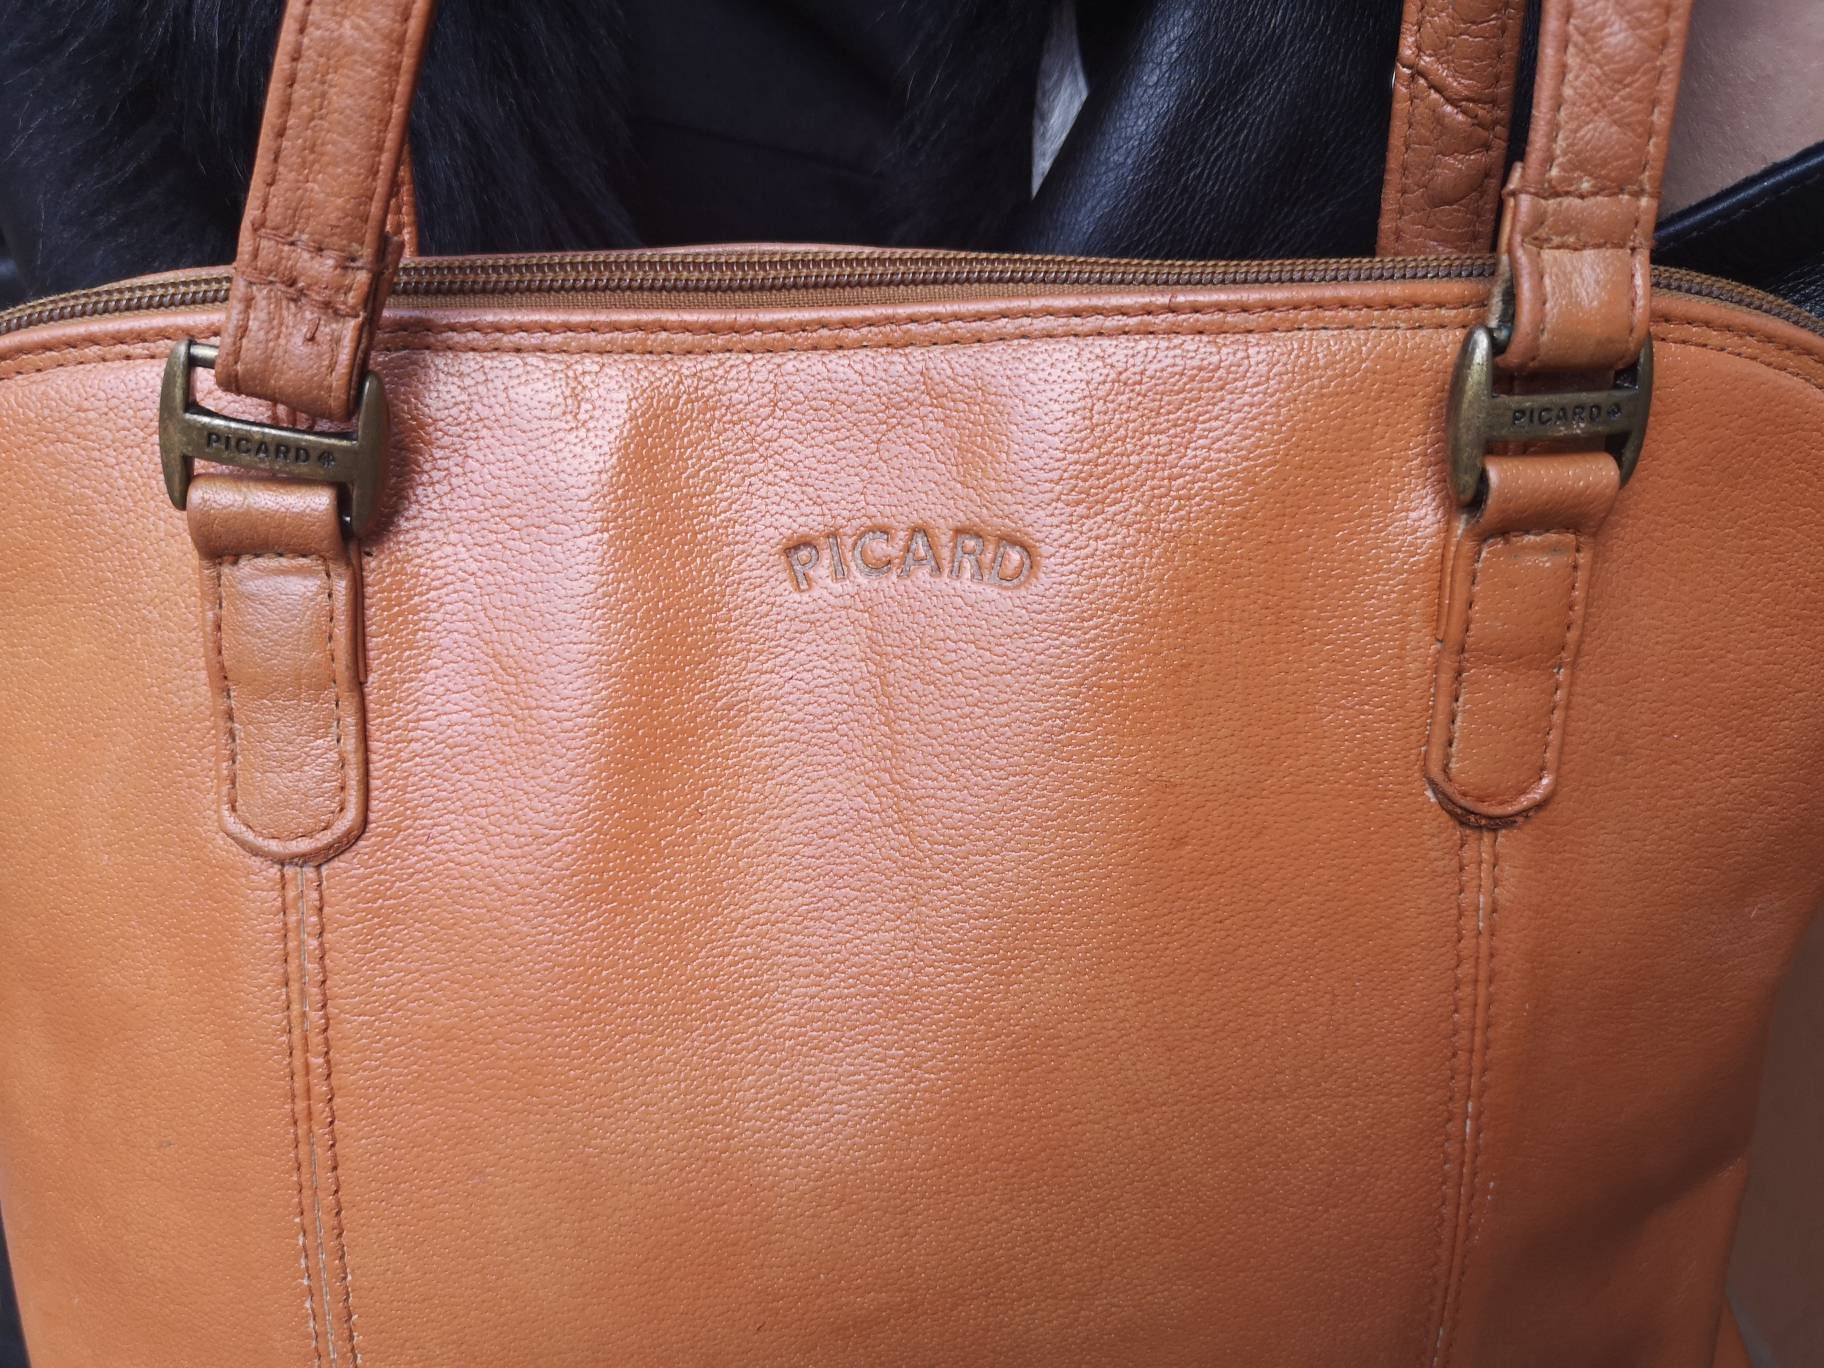 Vintage Picard Hobo Handbag Single Strap Leather Cream Bag Charm Germany